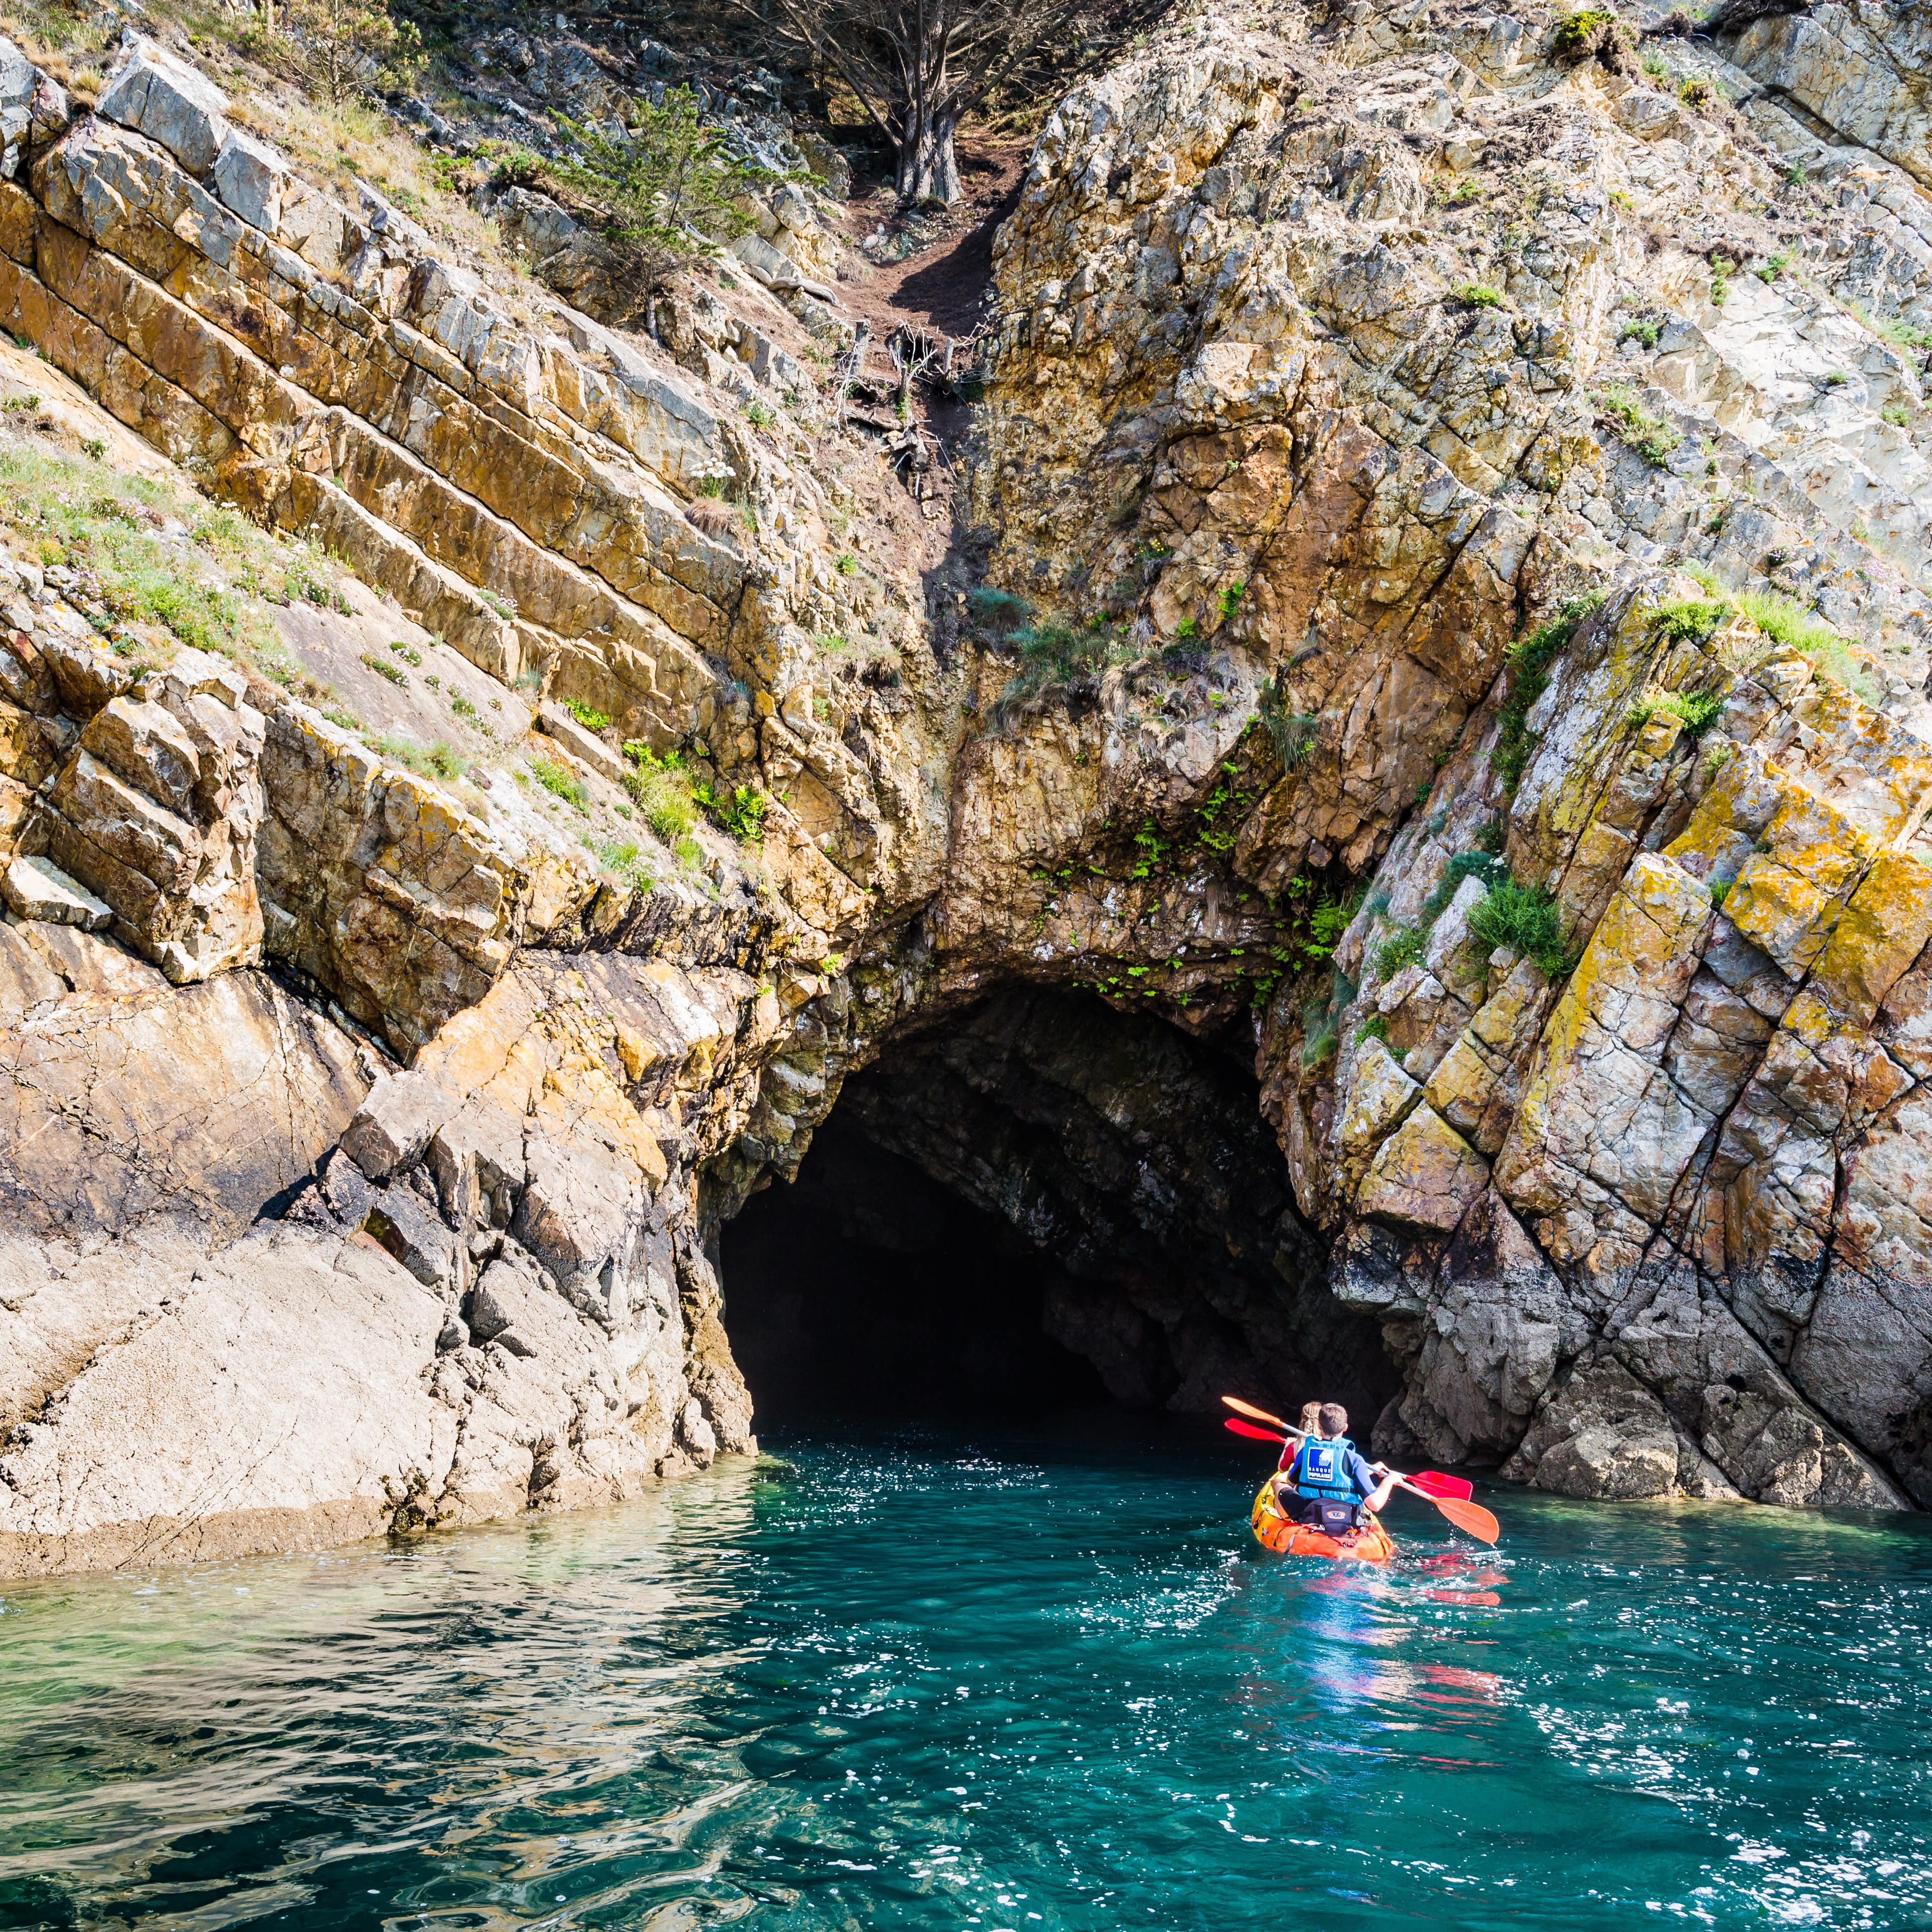 Vacances en famille dans le Finistère : balade en kayak dans les grottes de Morgat